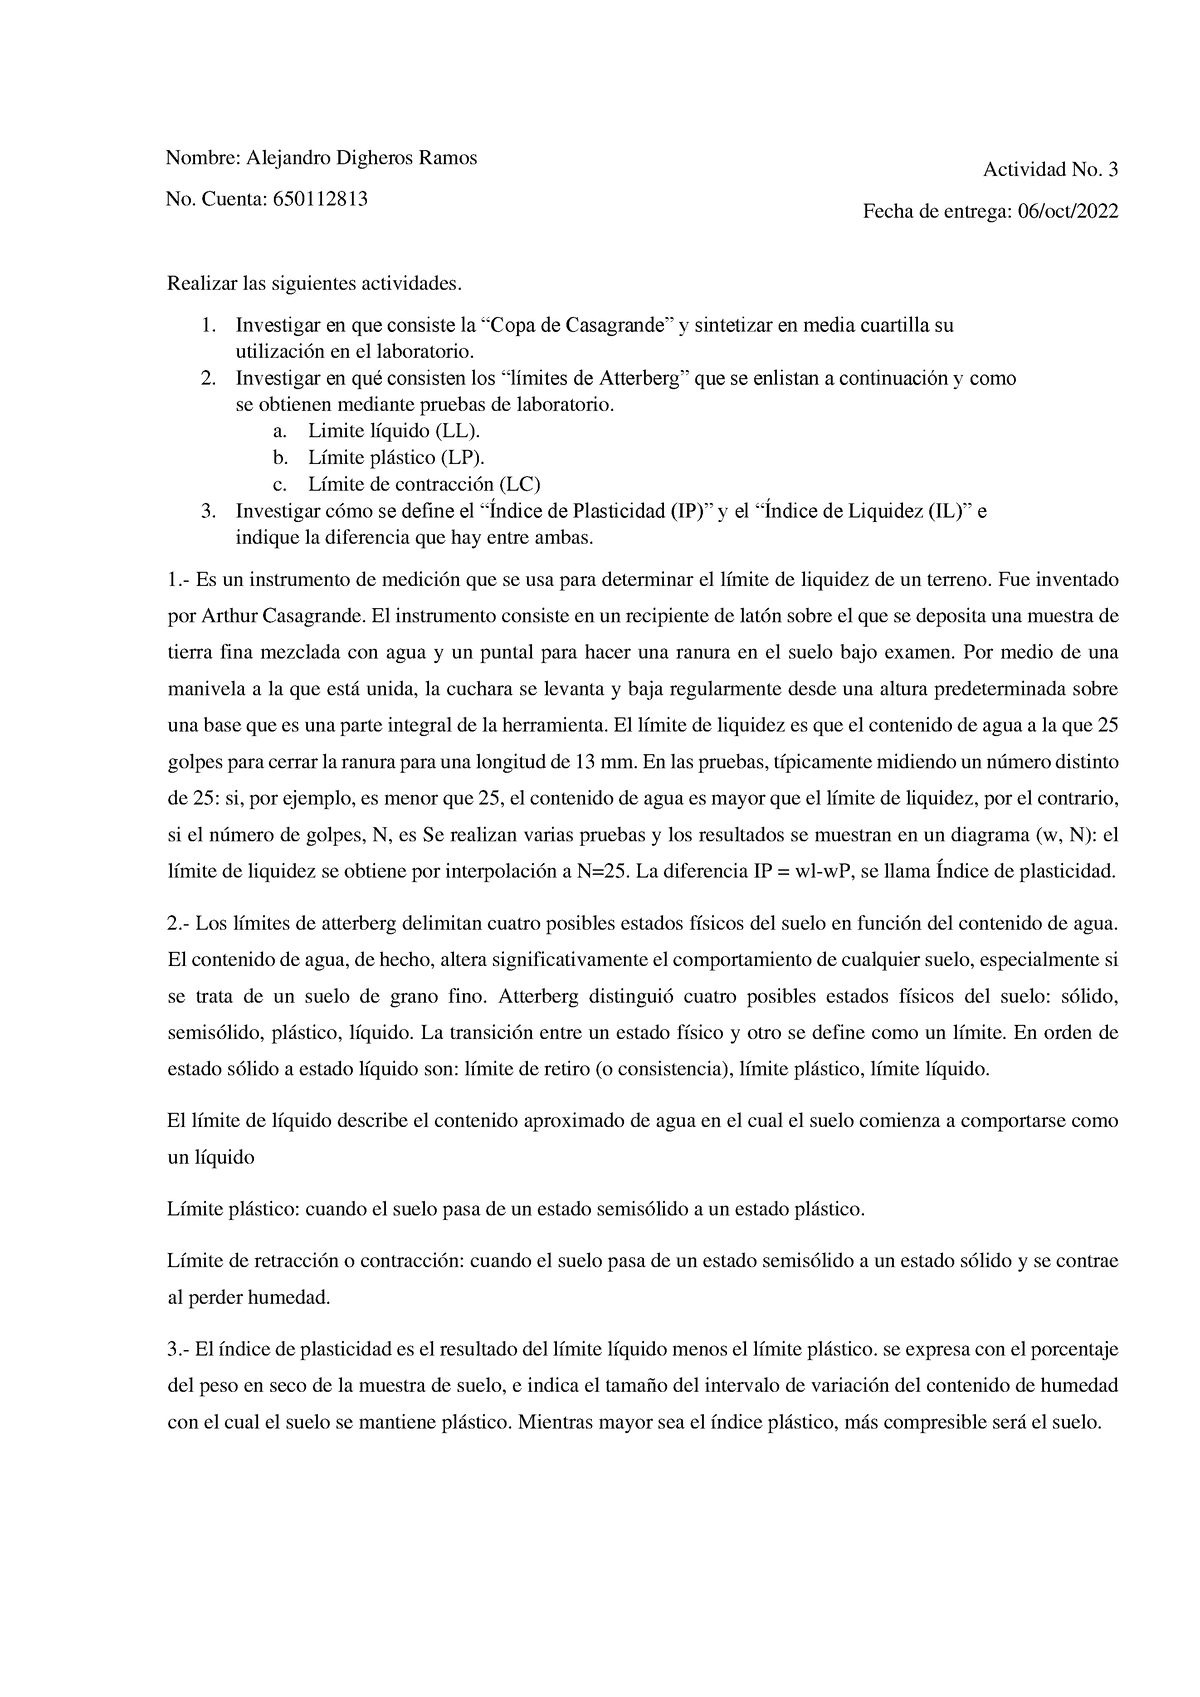 Actividad 3 Geotecnia - tarea - Nombre: Alejandro Digheros Ramos ...